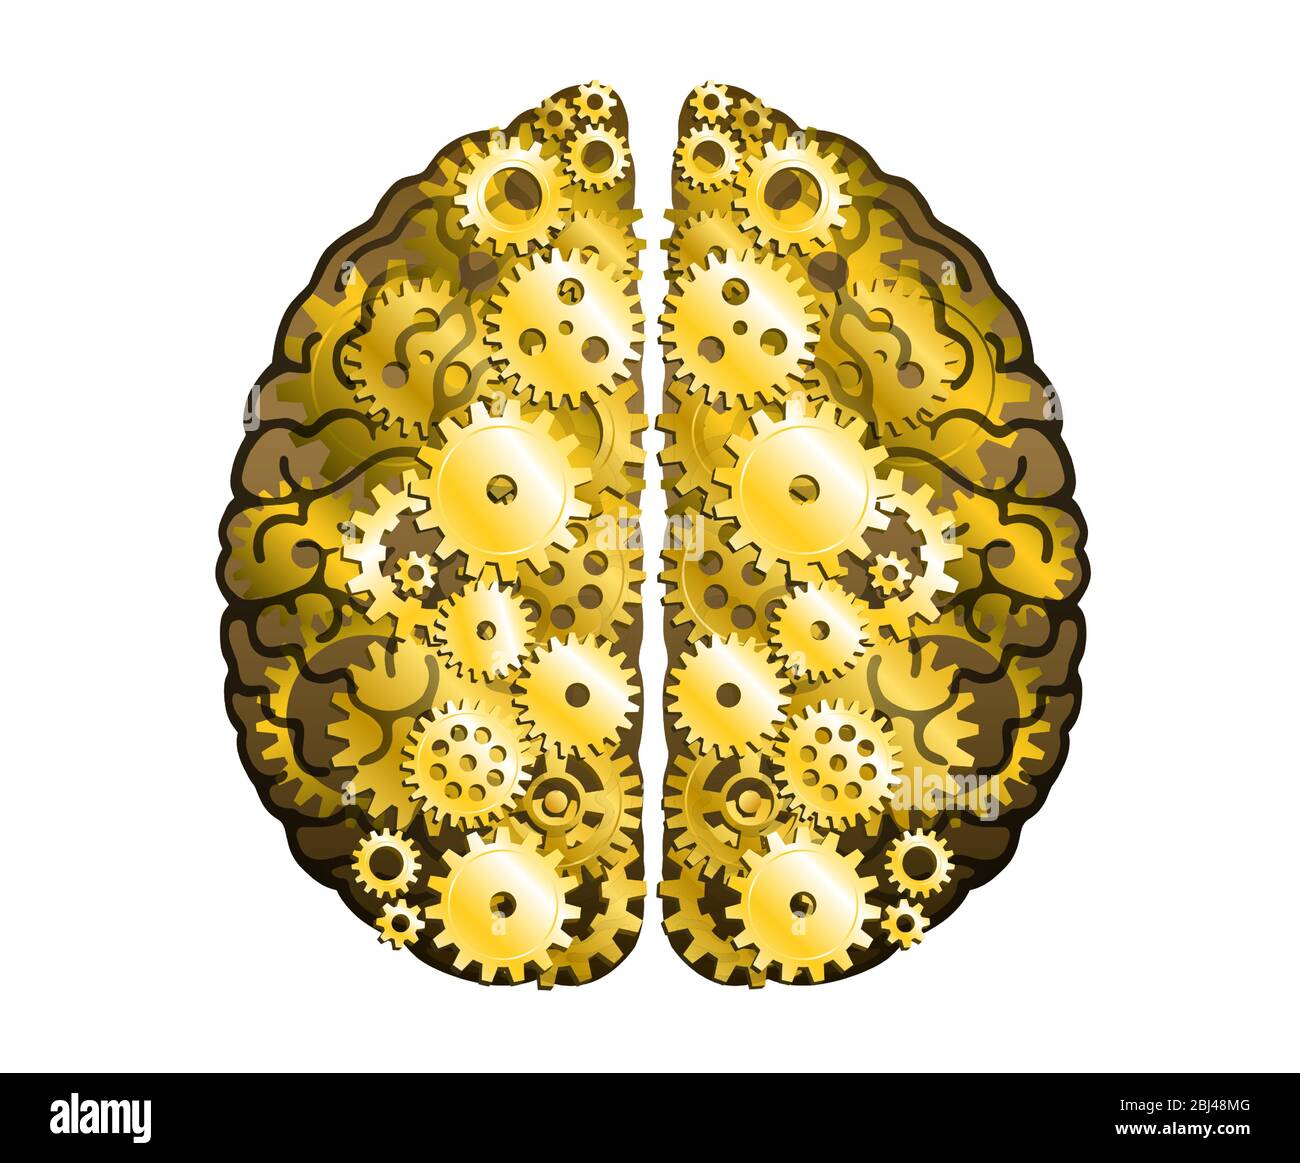 Cervello umano meccanico vettoriale su sfondo bianco. Emisferi cerebrali, convoluzioni della mente cervello. Ruota dentata e ingranaggi dorati, processo di pensiero Illustrazione Vettoriale